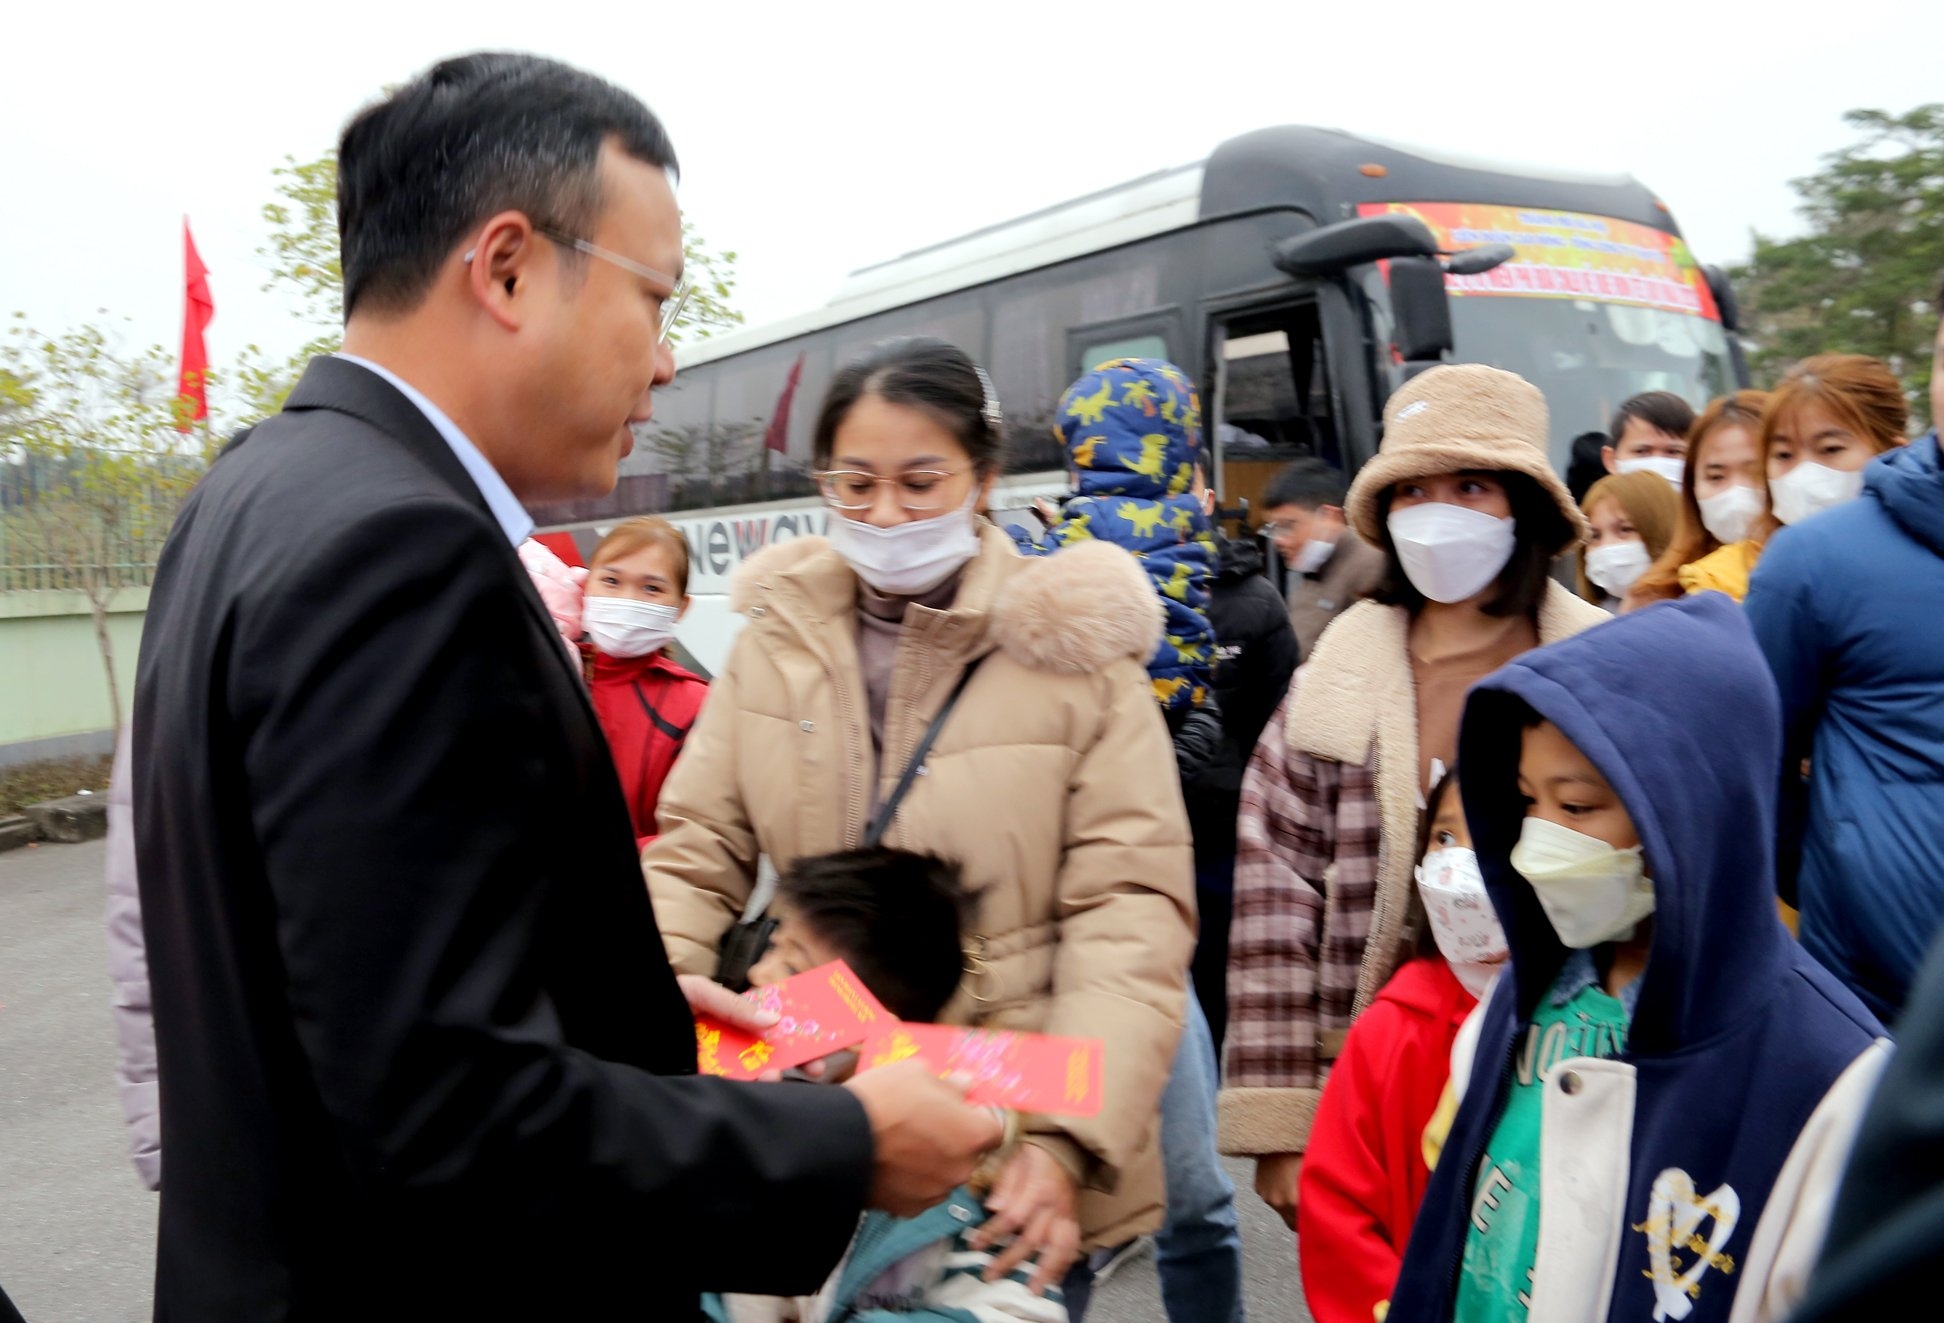 TRỰC TUYẾN HÌNH ẢNH: Những chuyến xe nghĩa tình của Công đoàn Thủ đô đưa công nhân về quê đón Tết